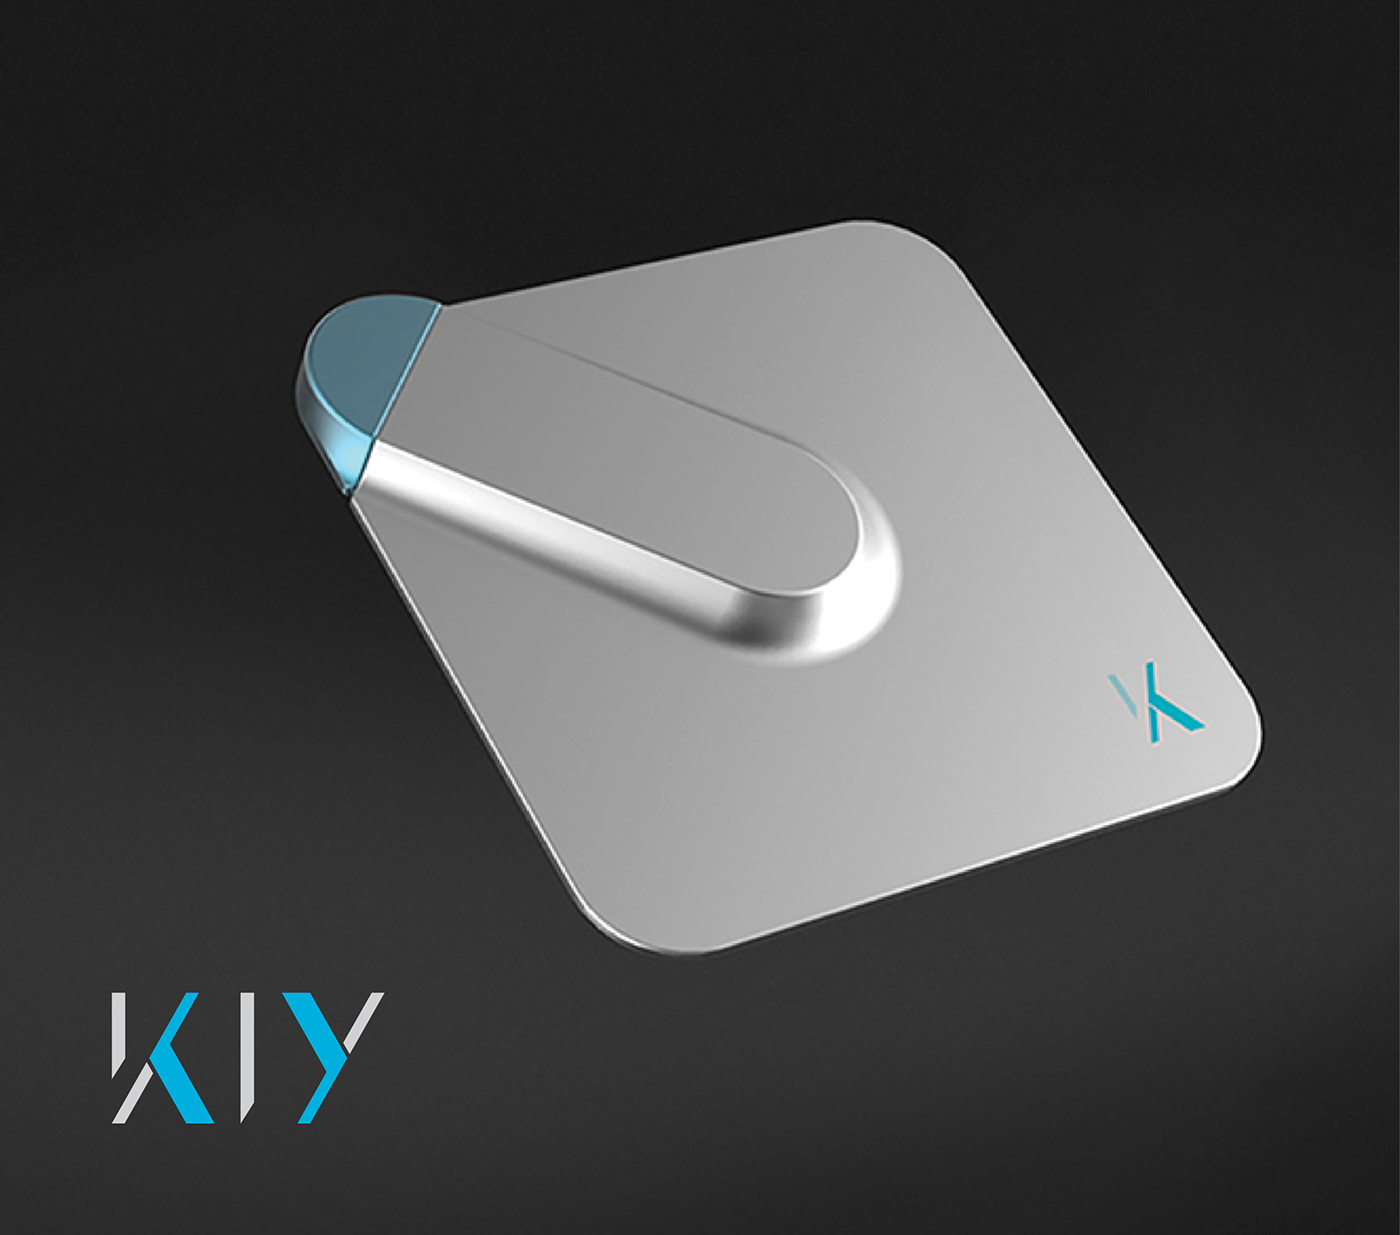 tech encryption logo brand kiy key cloud